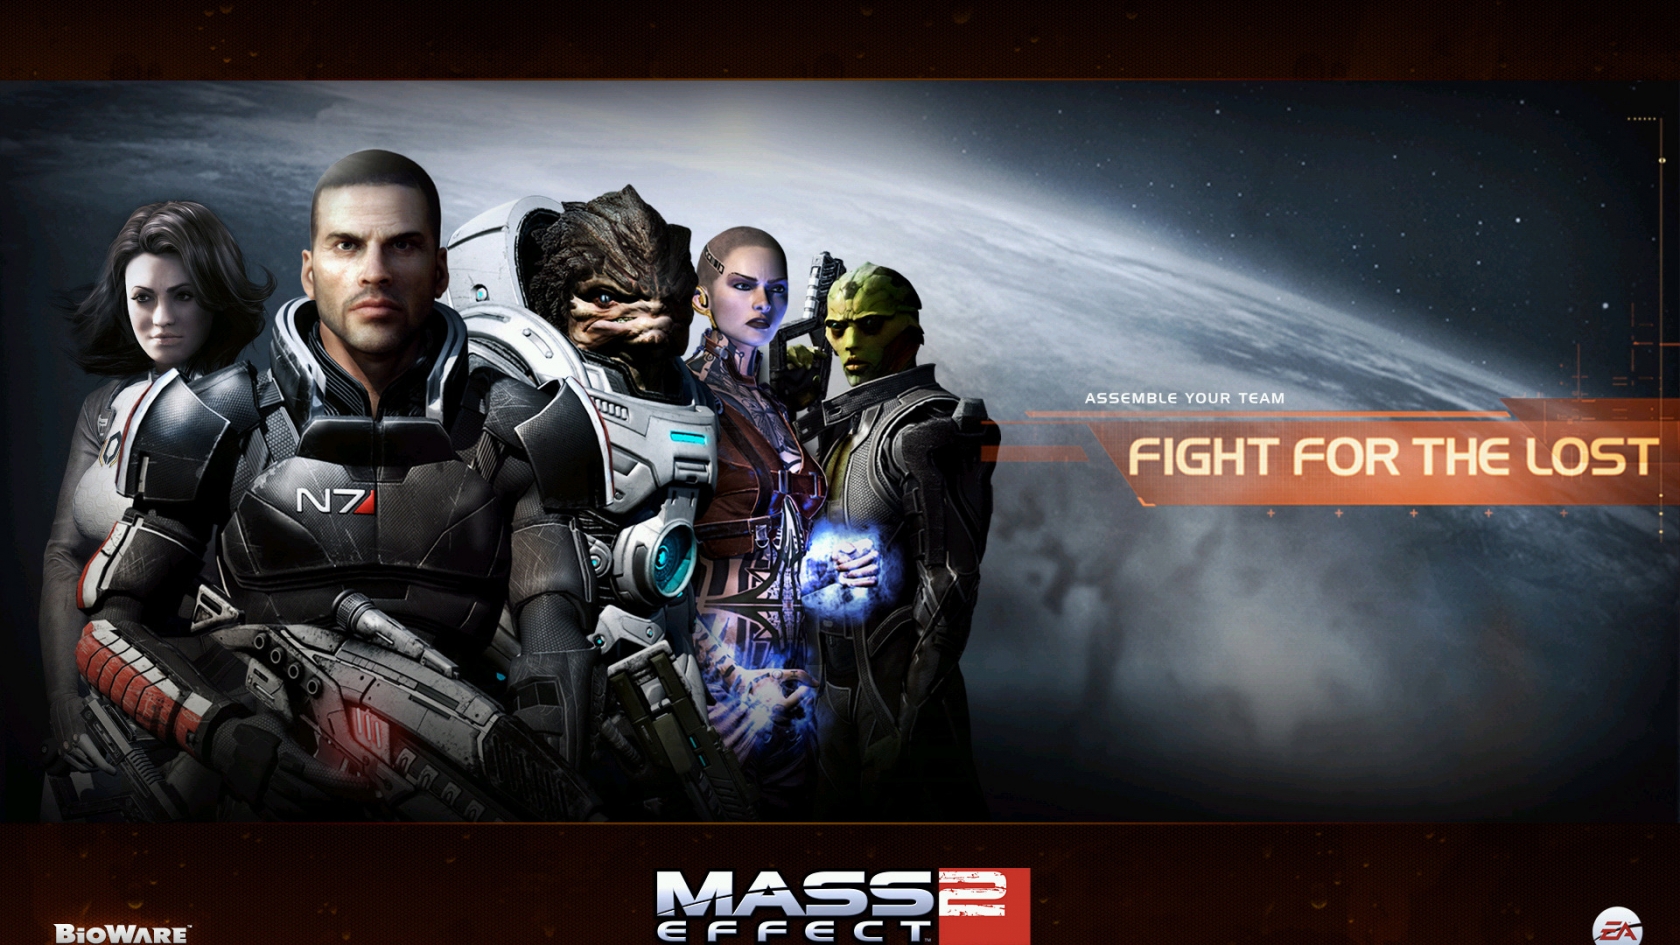 Mass Effect 2 for 1680 x 945 HDTV resolution